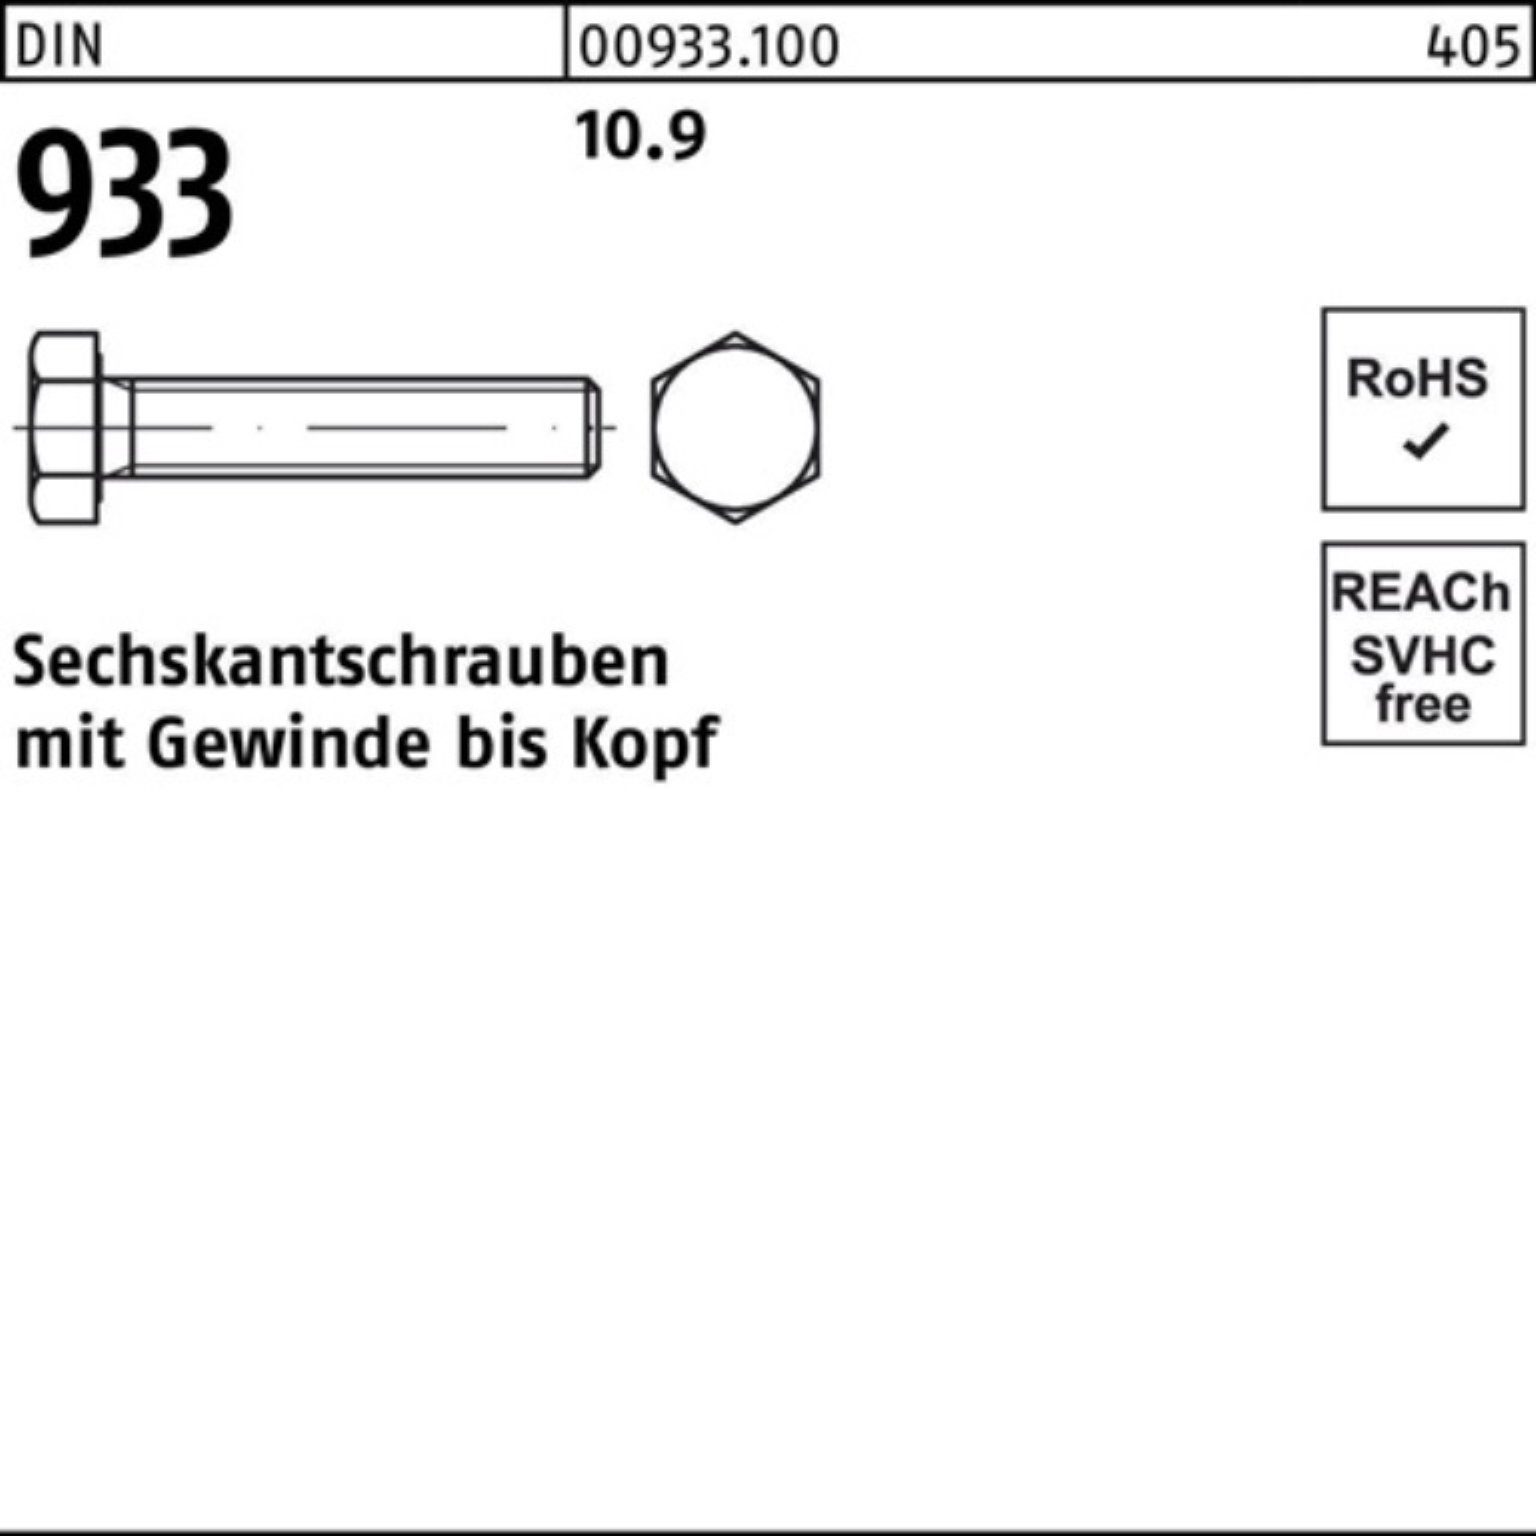 Reyher Sechskantschraube 933 M16x Sechskantschraube DIN 50 100er DIN Pack VG Stück 10.9 55 933